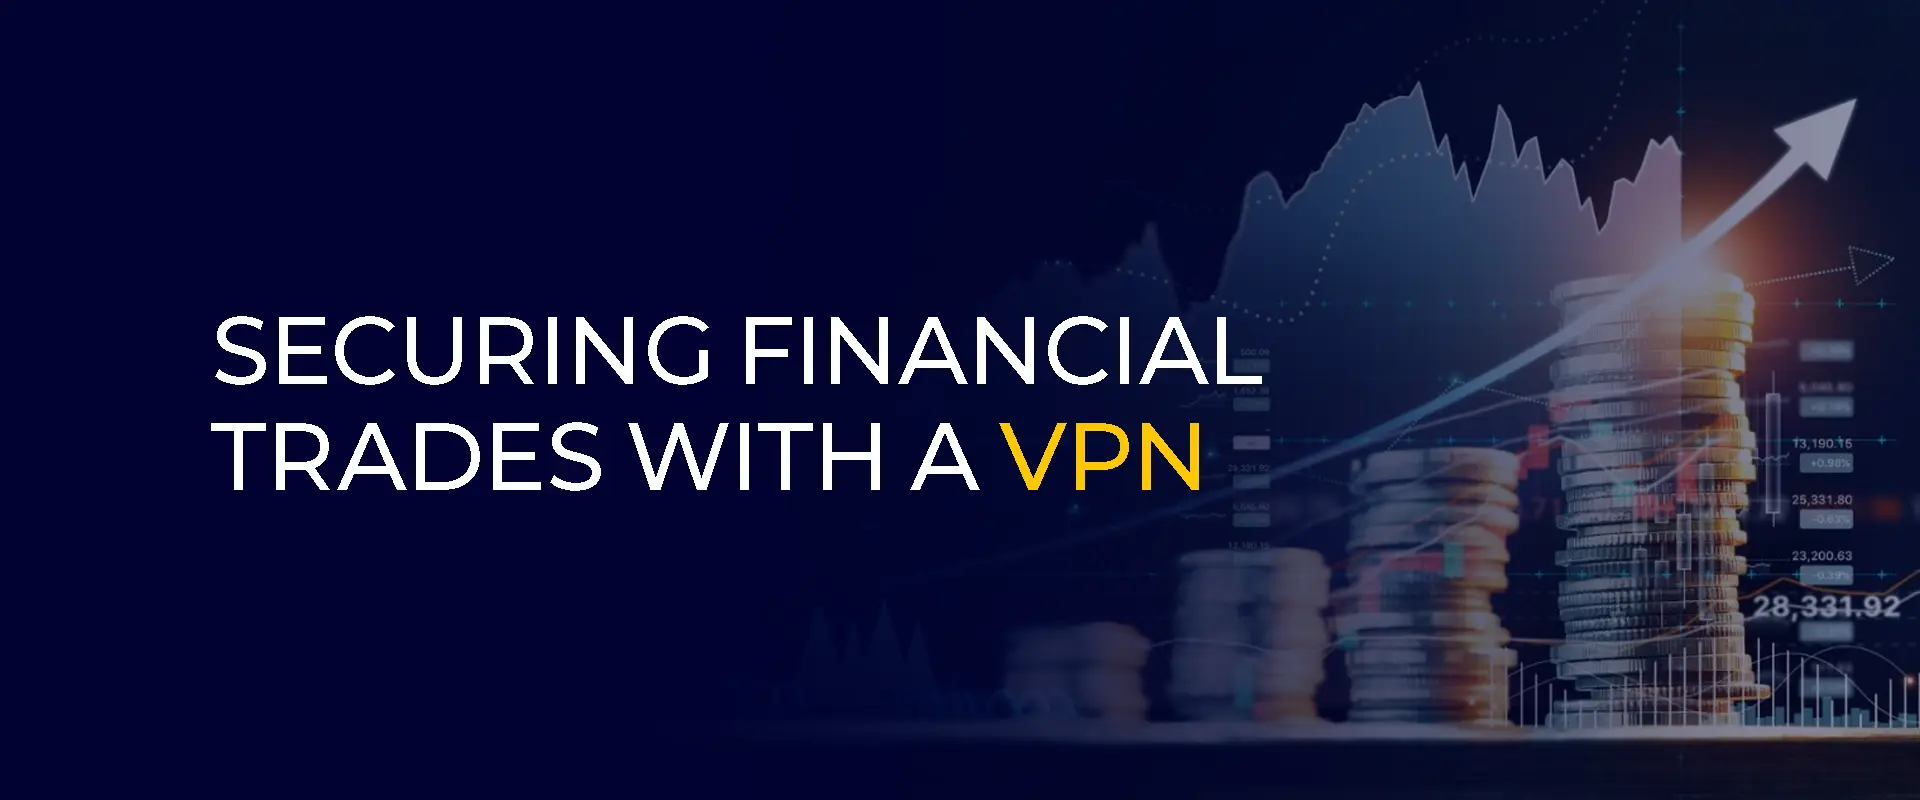 Finanzgeschäfte mit einem VPN sichern